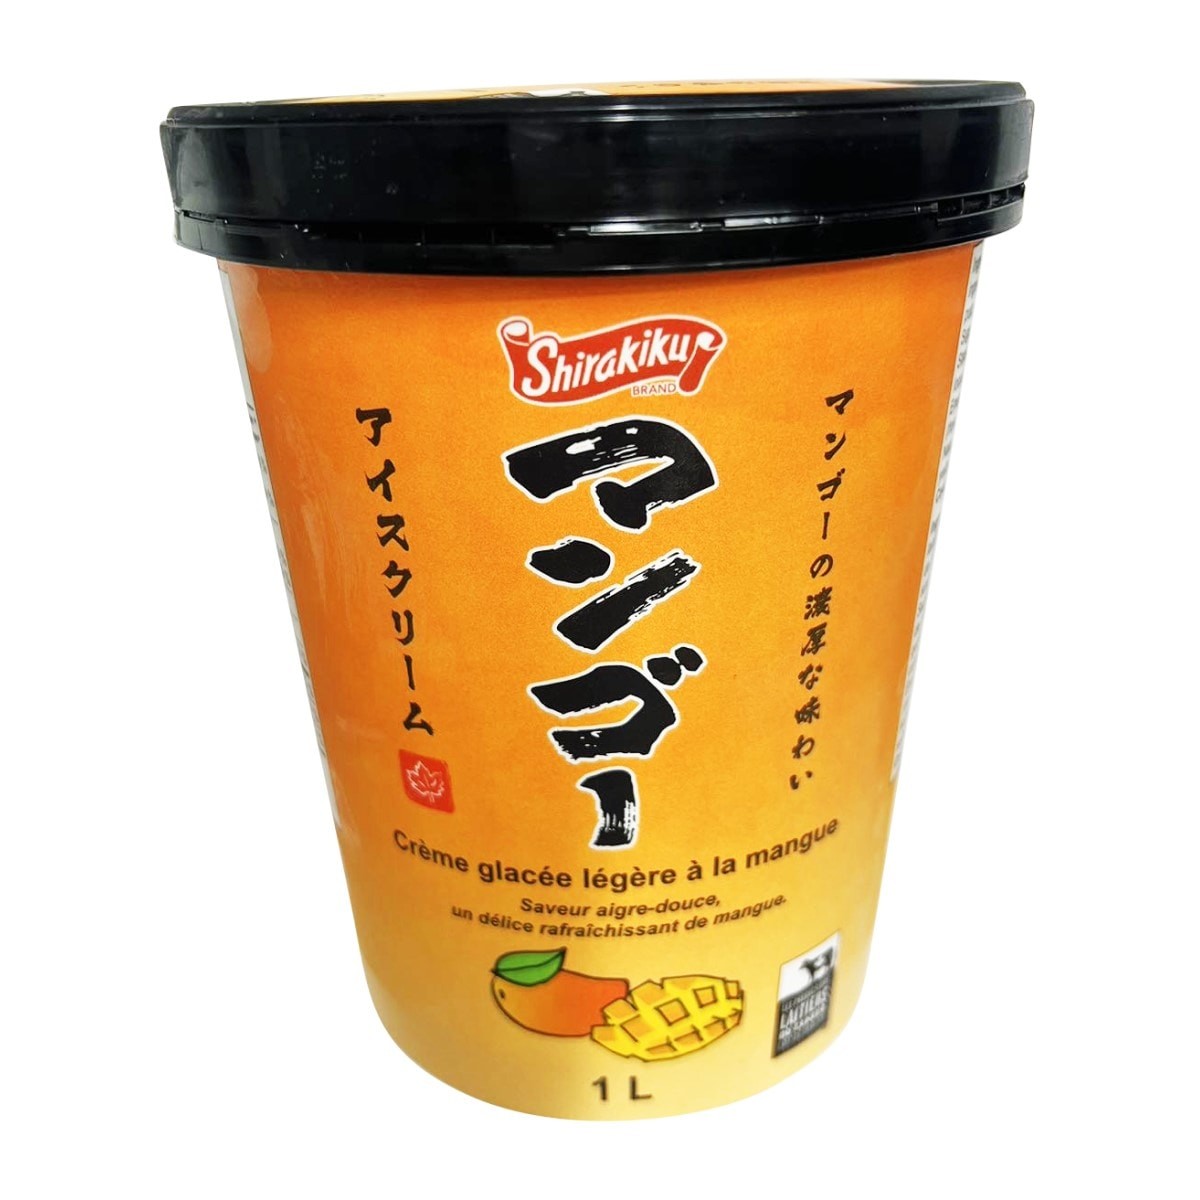 shirakiku-ice-cream-mango-flavor